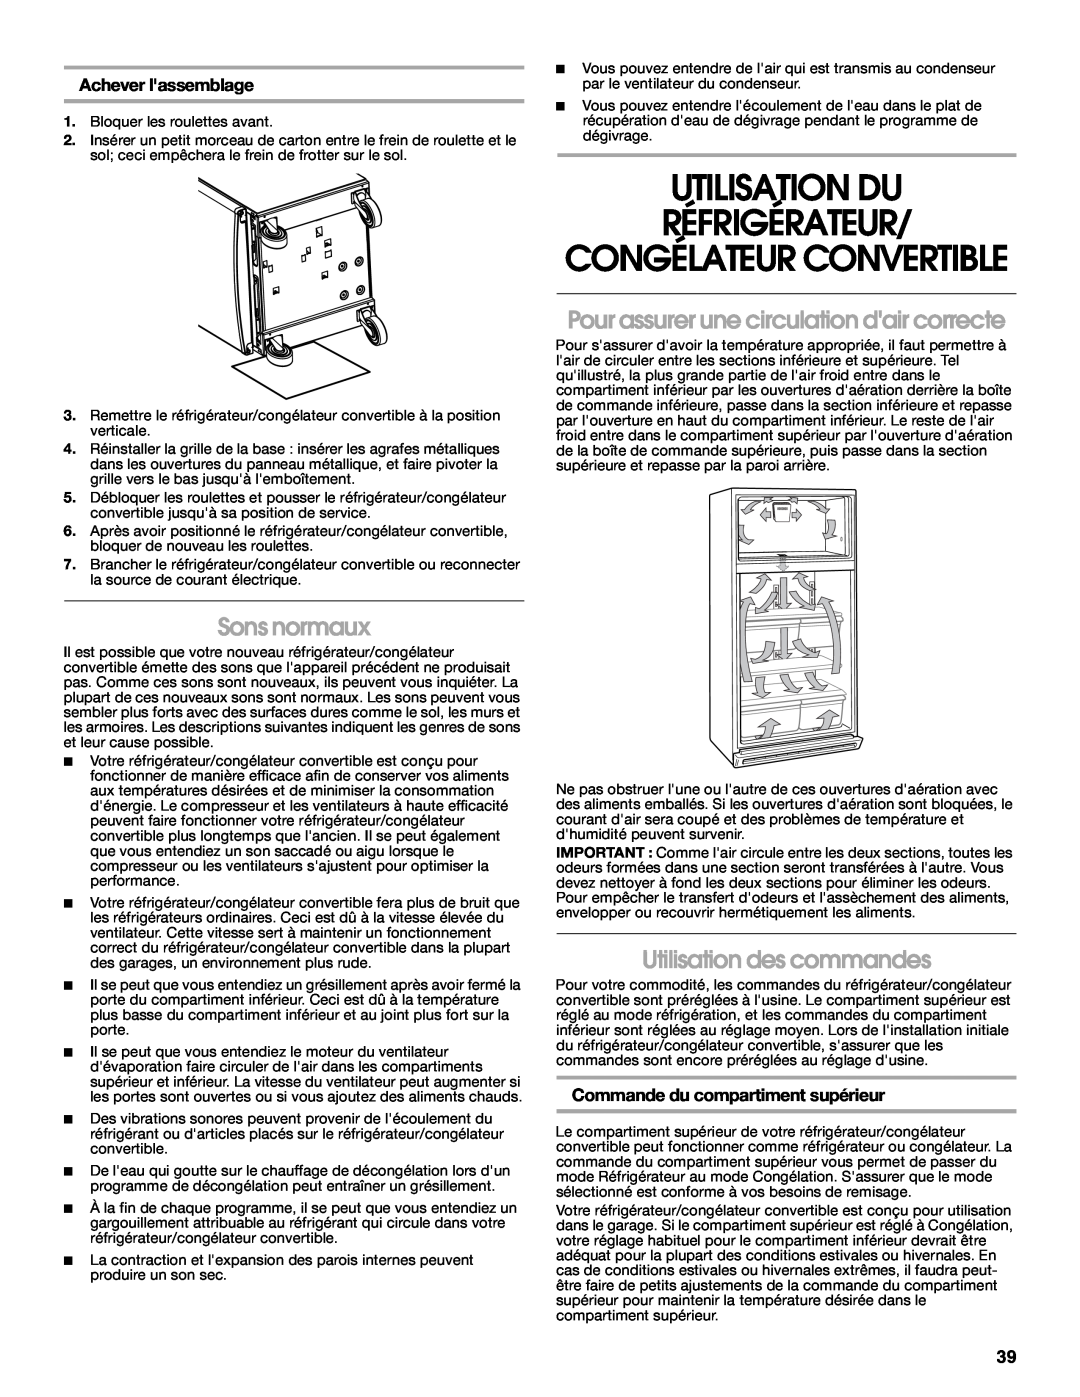 Whirlpool GAFZ21XXRK01 Utilisation Du Réfrigérateur, Congélateur Convertible, Sons normaux, Utilisation des commandes 